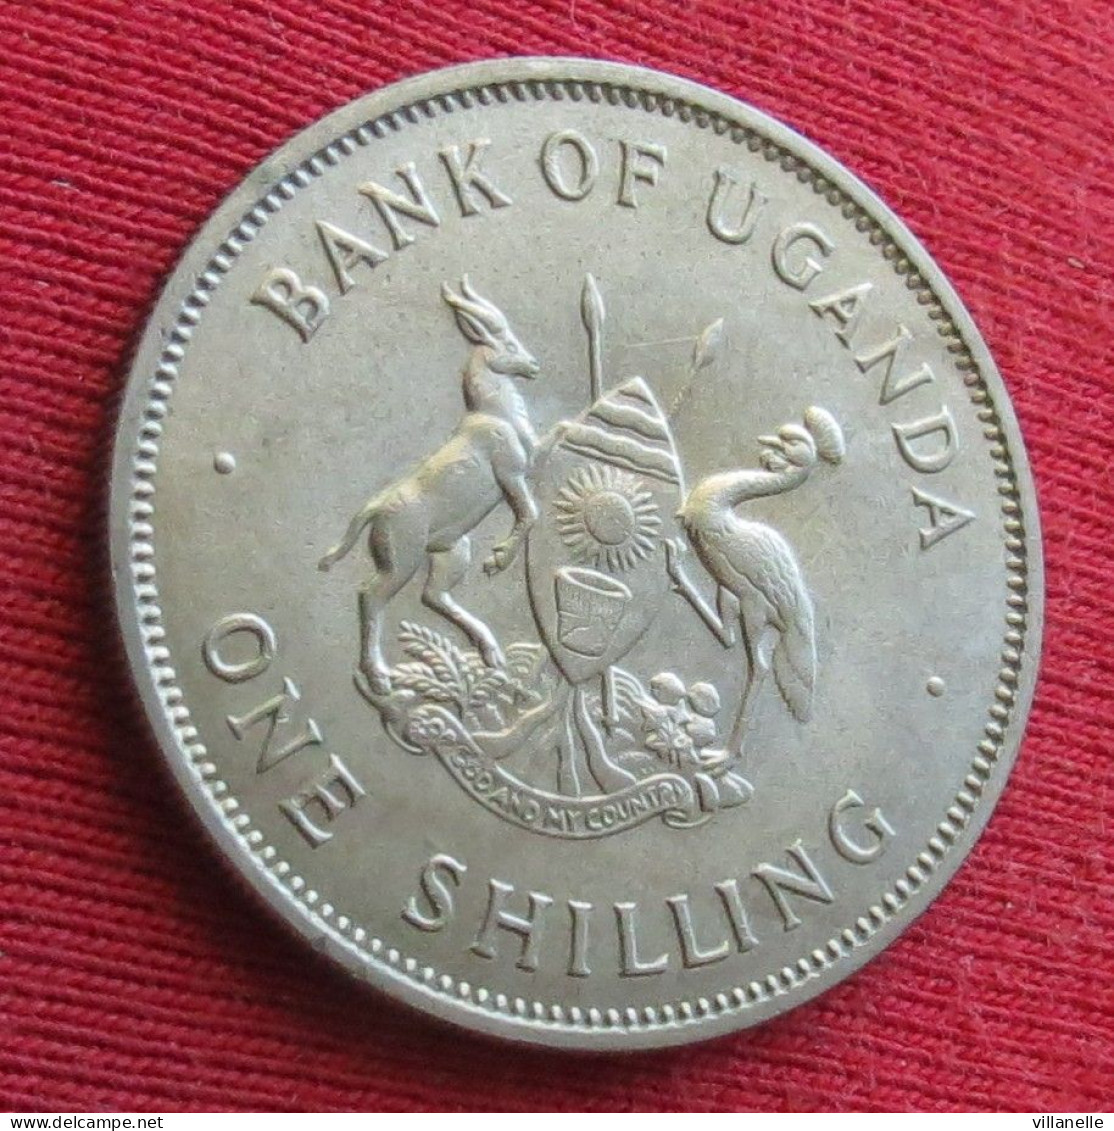 Uganda 1 Shilling 1968 Ouganda W ºº - Oeganda